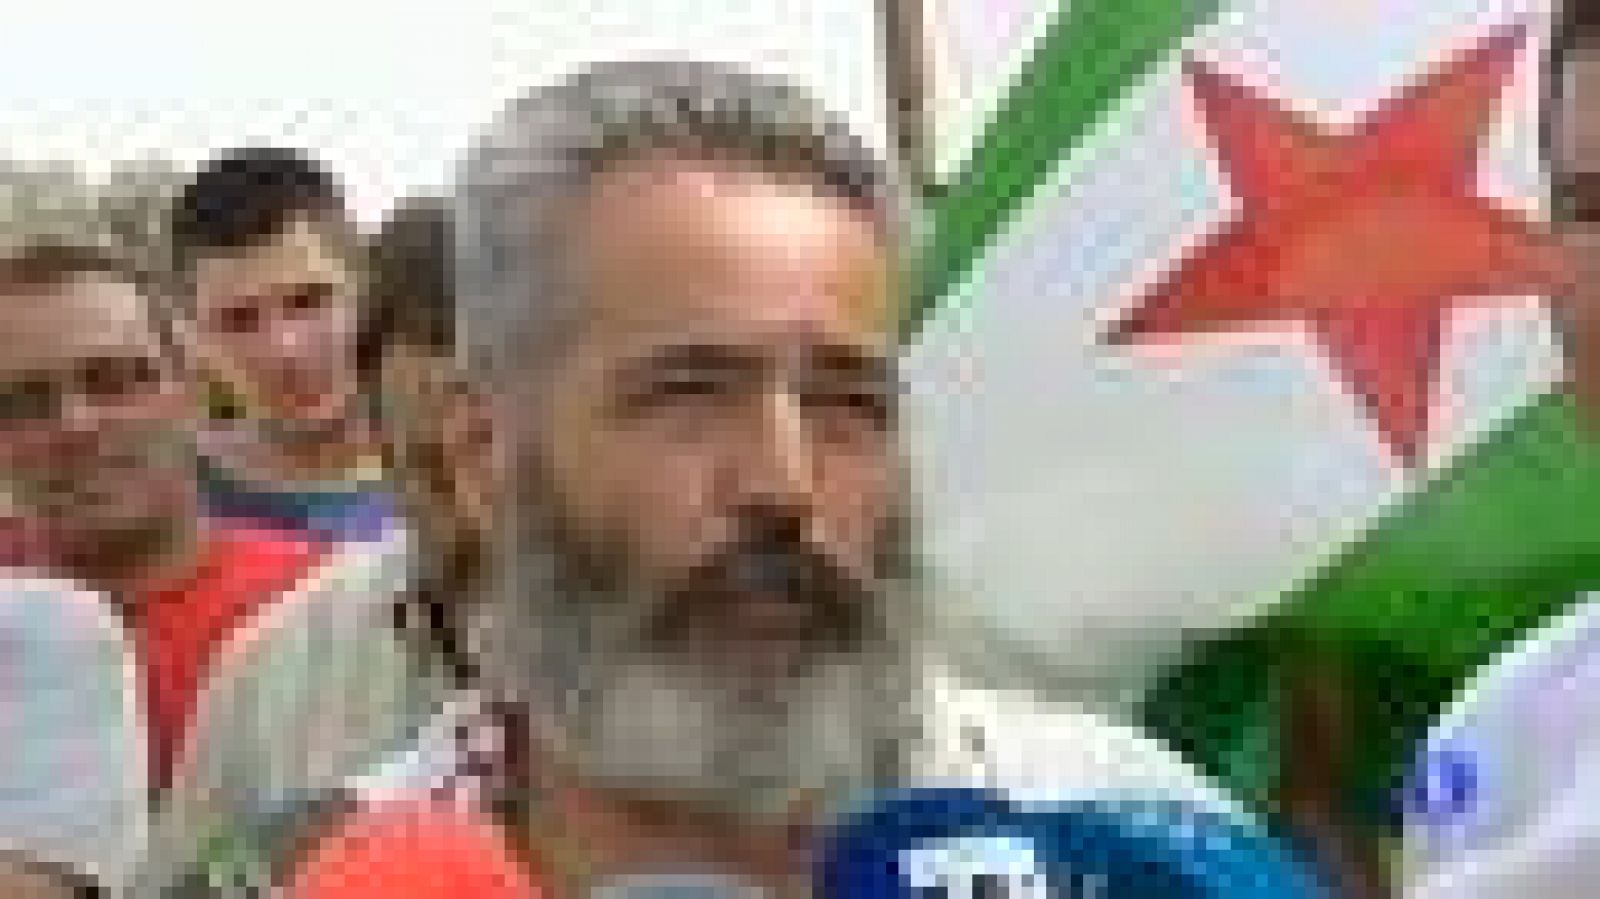 El Ministro de Justicia pide la investigación del asalto a dos supermercados en Andalucía